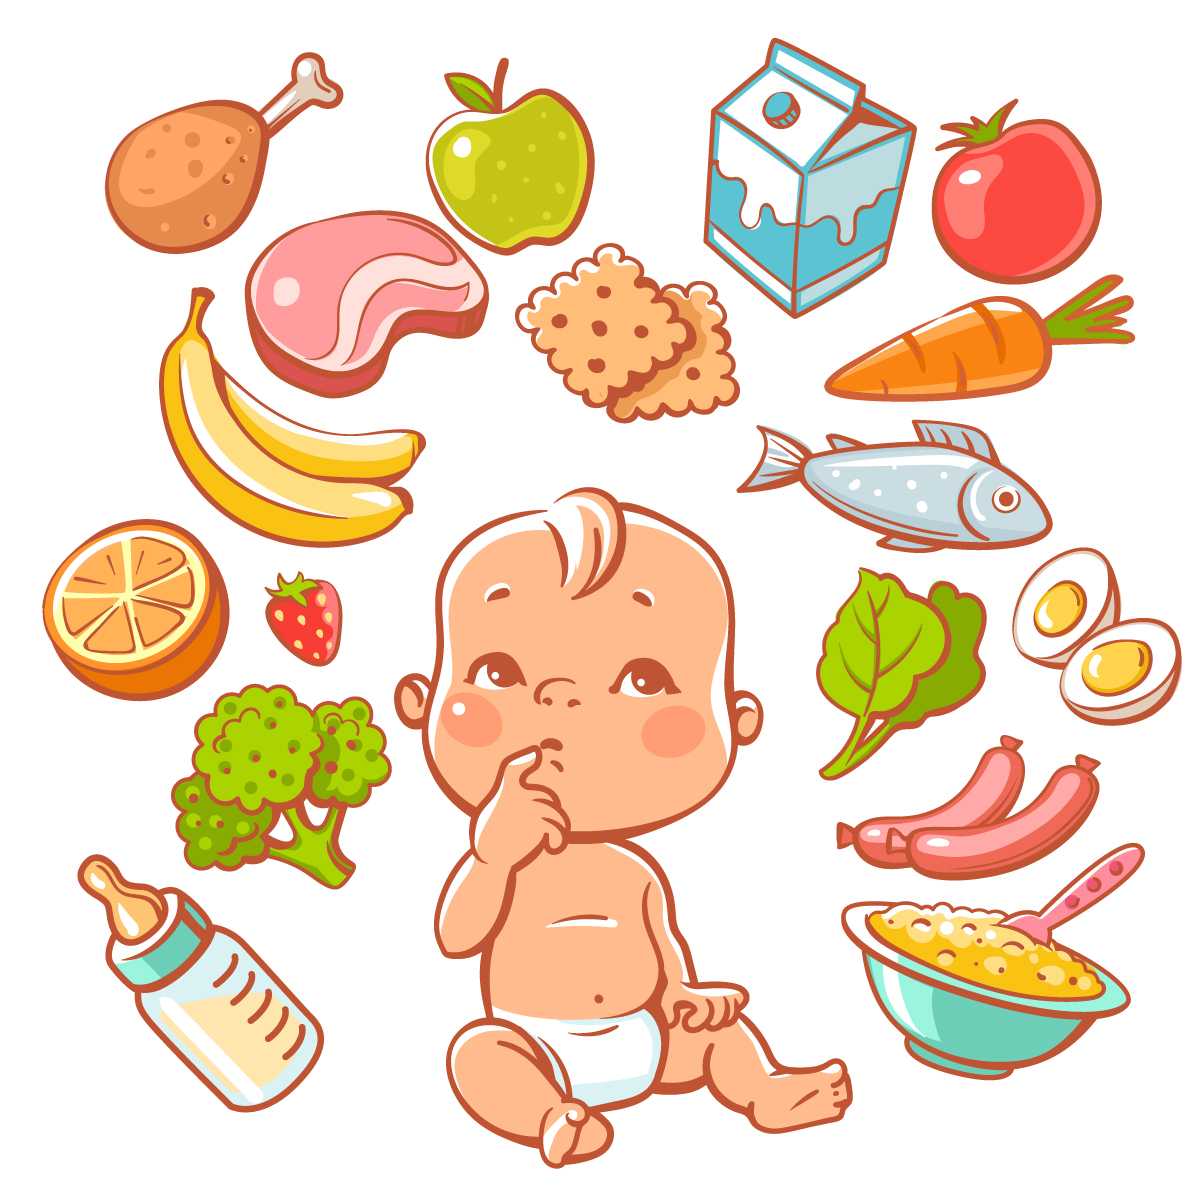 การส่งเสริมโภชนาการในเด็กที่ครอบคลุมกว้างกว่าเพียงเรื่องอาหารการกิน: หลักฐานจากการทดลองสุ่มแบบมีกลุ่มควบคุม (RCT)